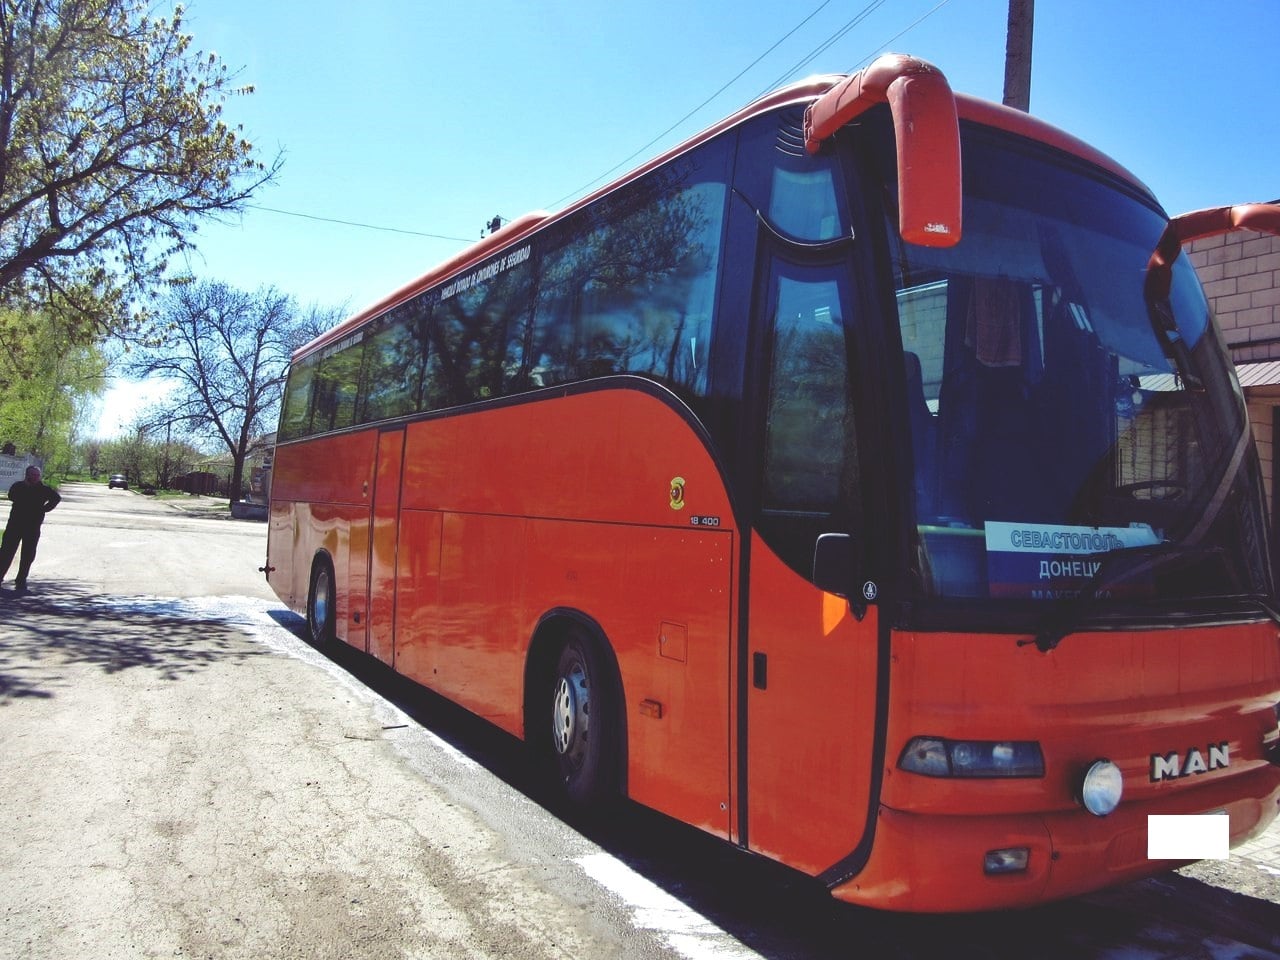 Автостанция брянск расписание автобусов 2020 официальный сайт